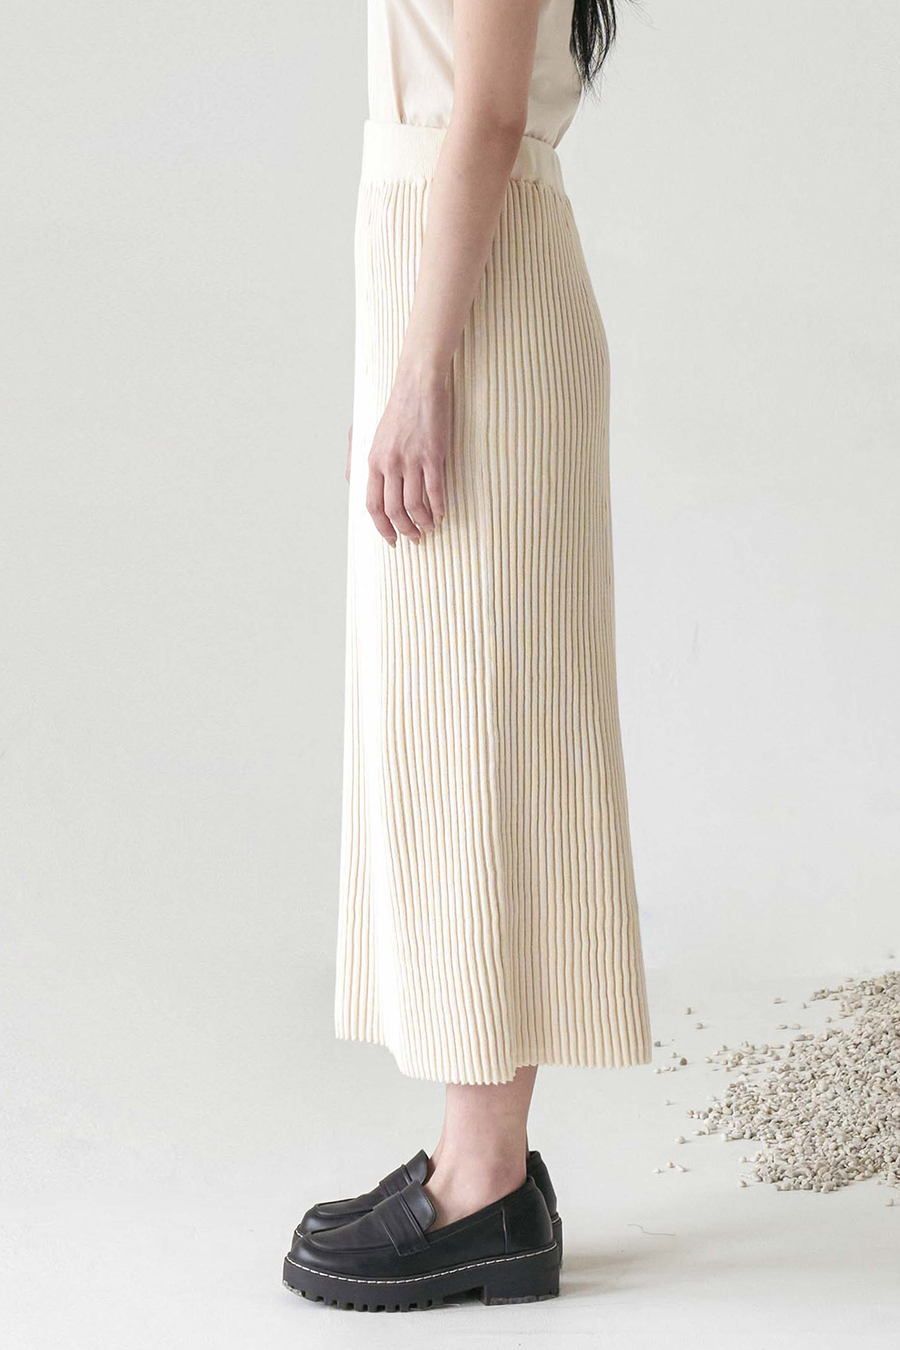 Wheat Sou Skirt